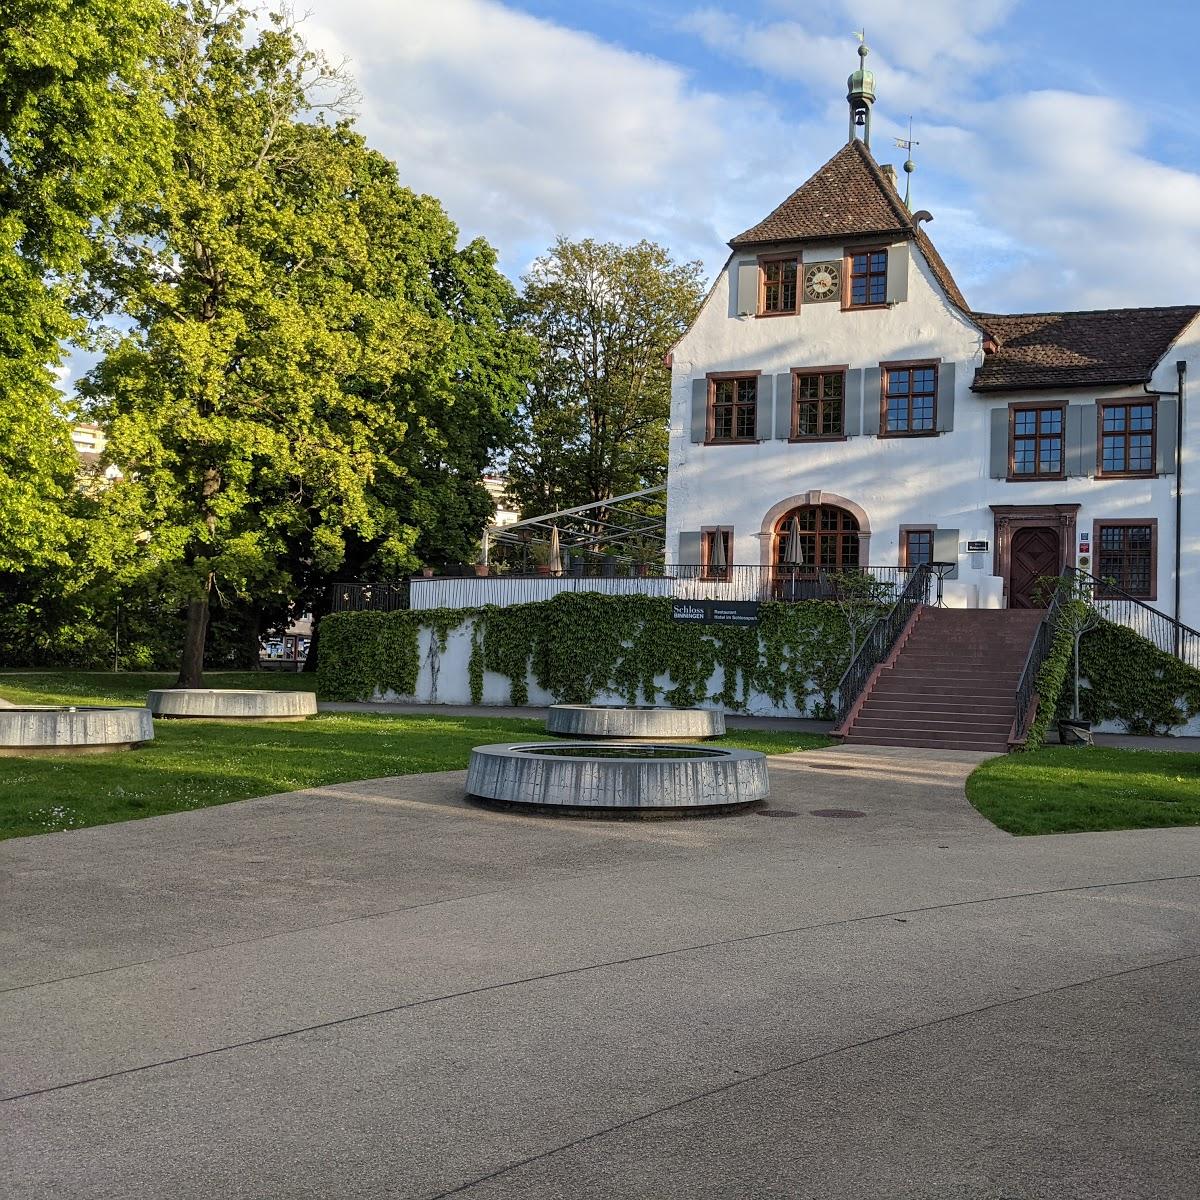 Restaurant "Hotel im Schlosspark" in Binningen